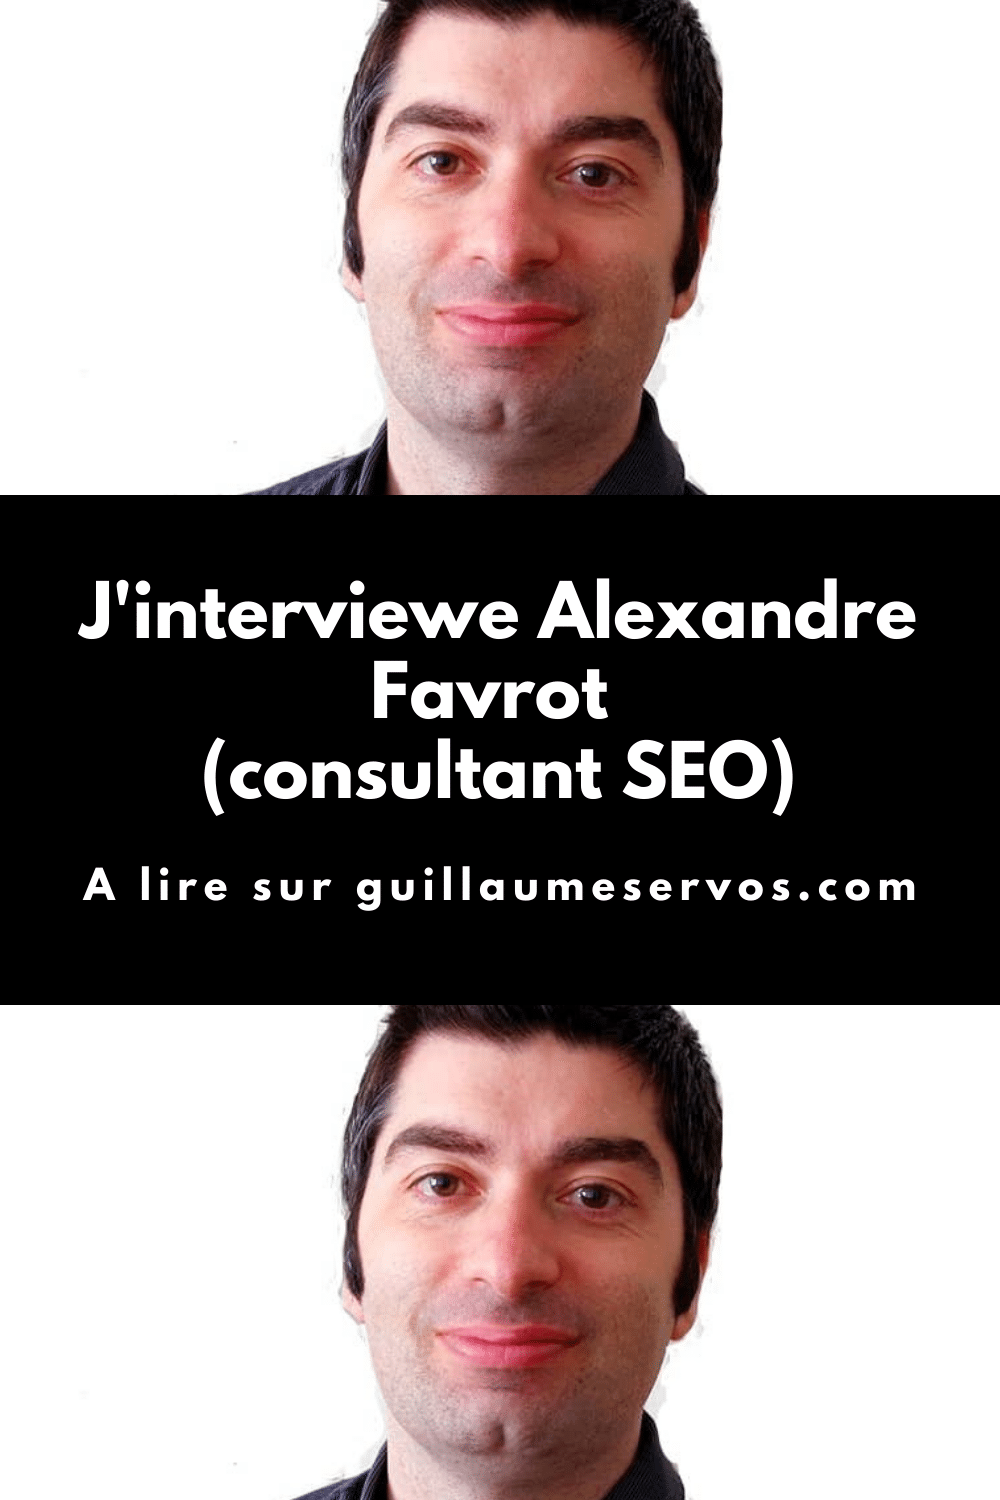 Découvre mon interview avec Alexandre Favrot, consultant SEO sur Lyon. Au menu : son rapport au freelancing, aux réseaux sociaux, au voyage et sa carte blanche.